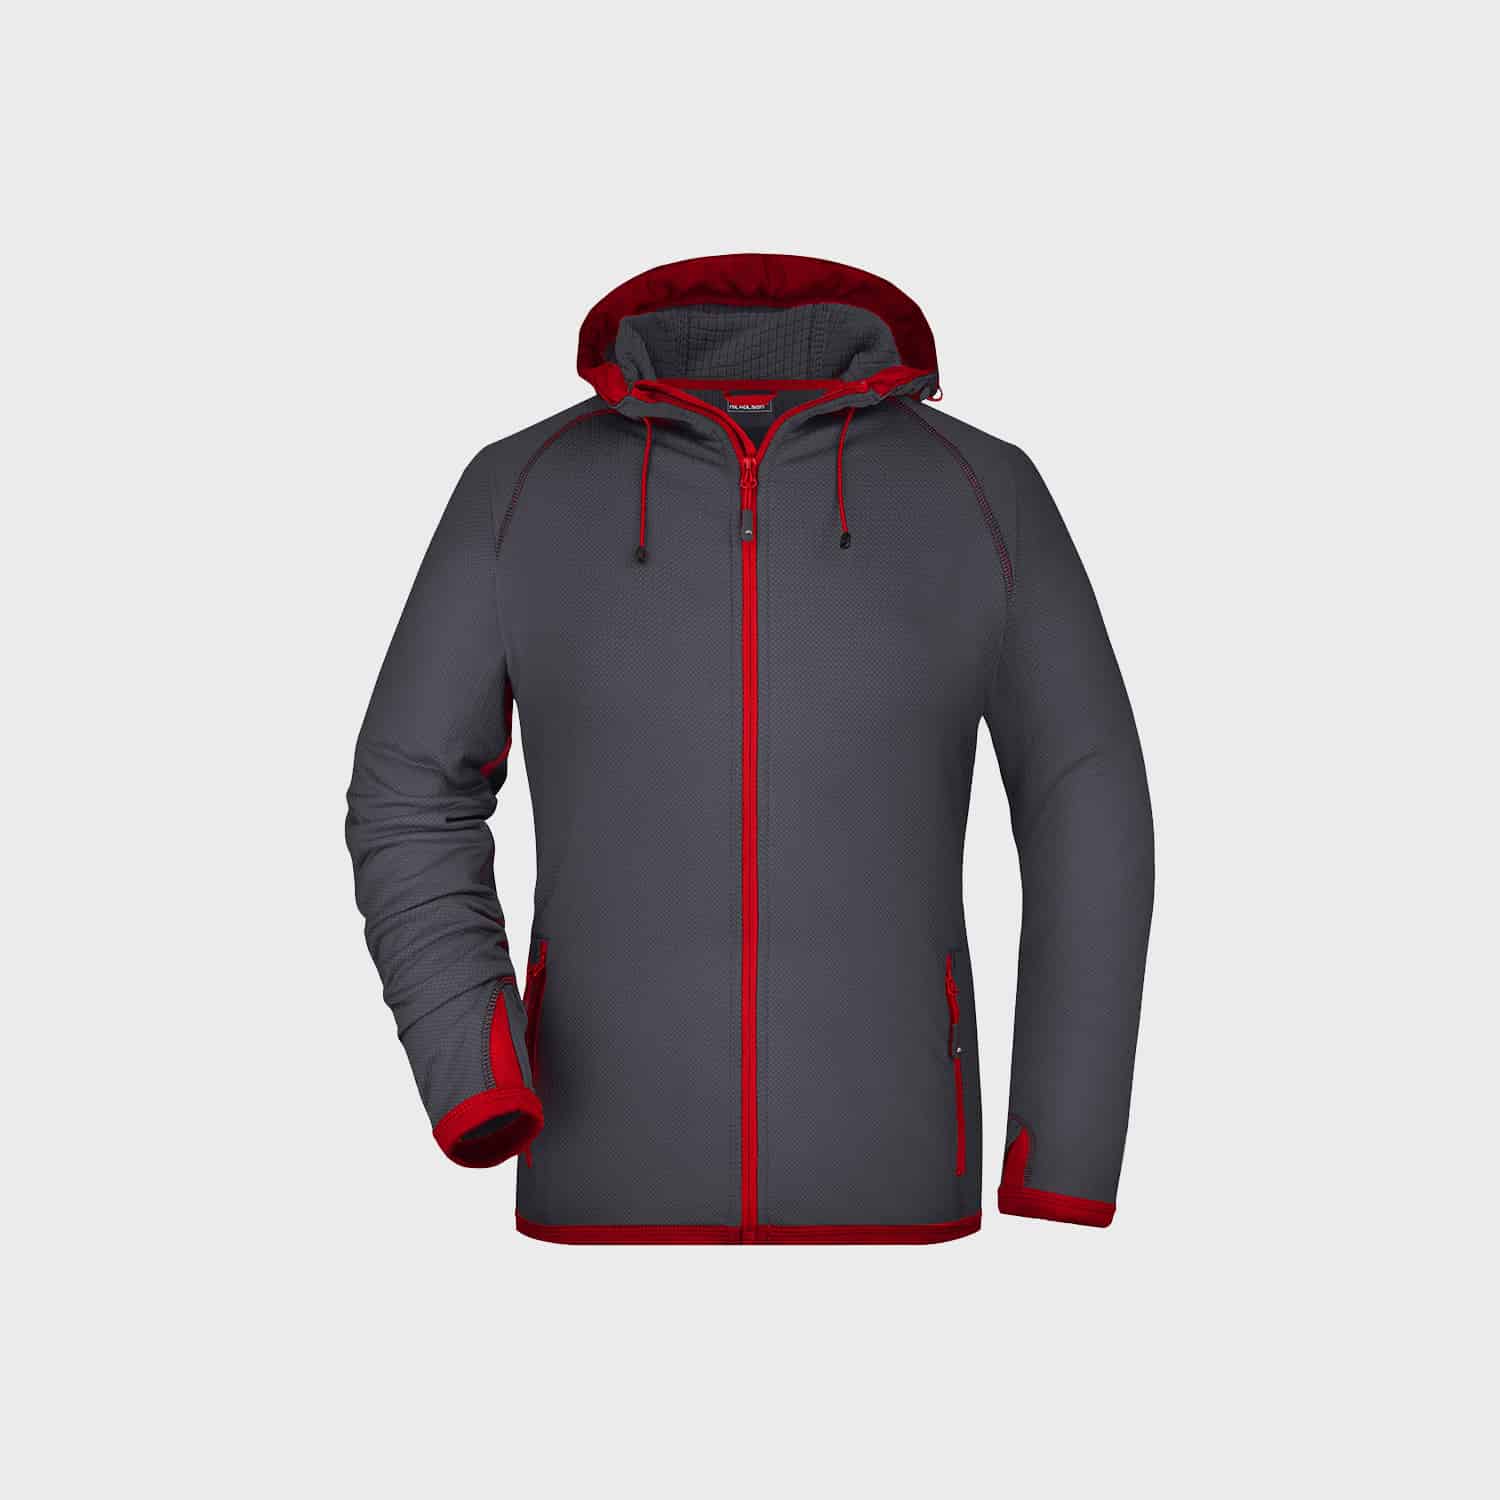 hooded-fleece-jacket-damen-carbon-red-kaufen-besticken_stickmanufaktur